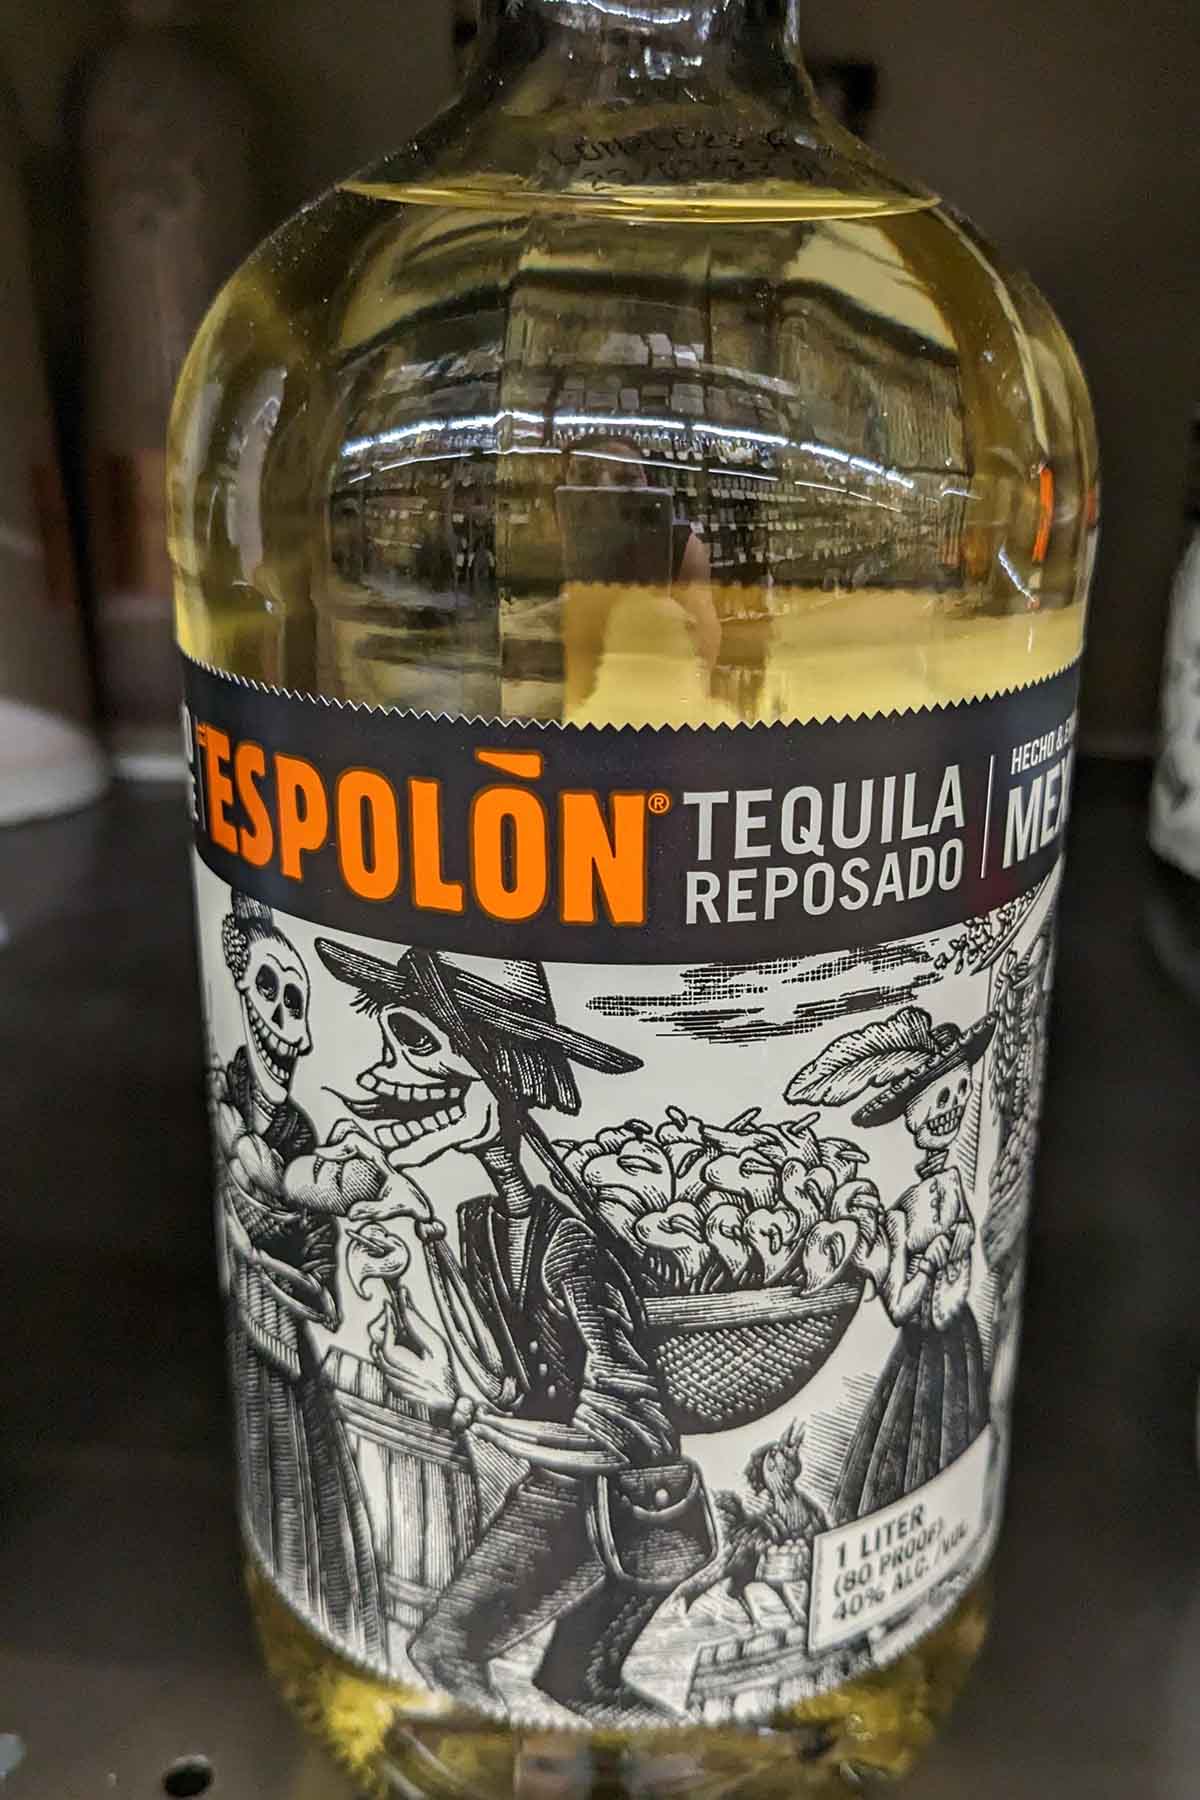 bottle of Espolon reposado tequila.